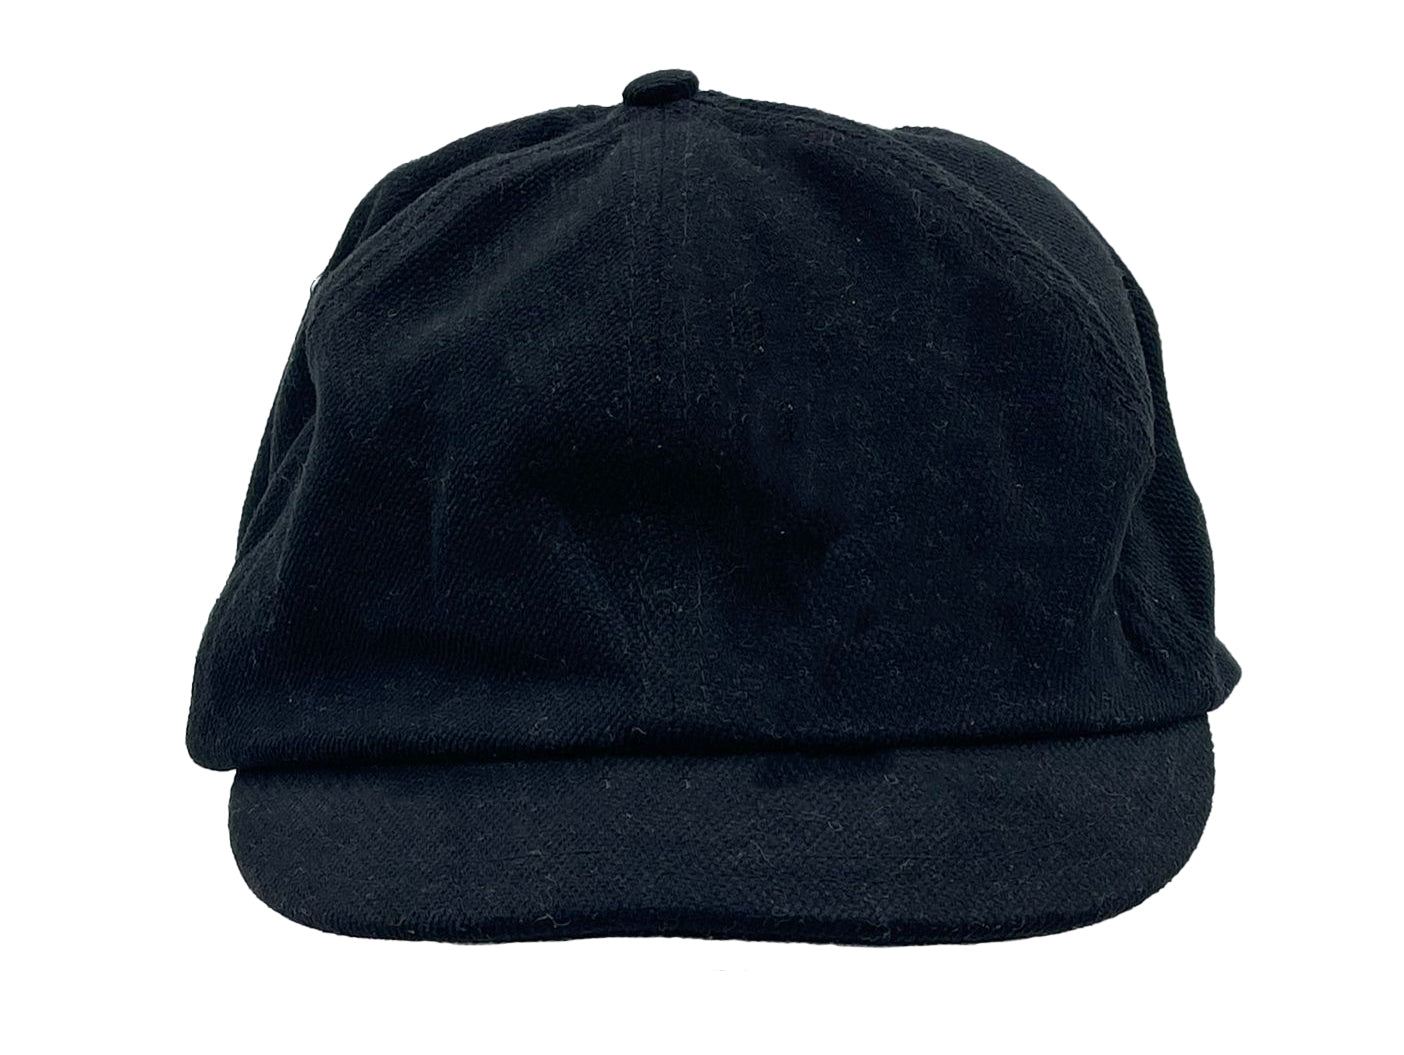 Flat Cap, Schiebermütze aus weichem Twill in schwarz & braun